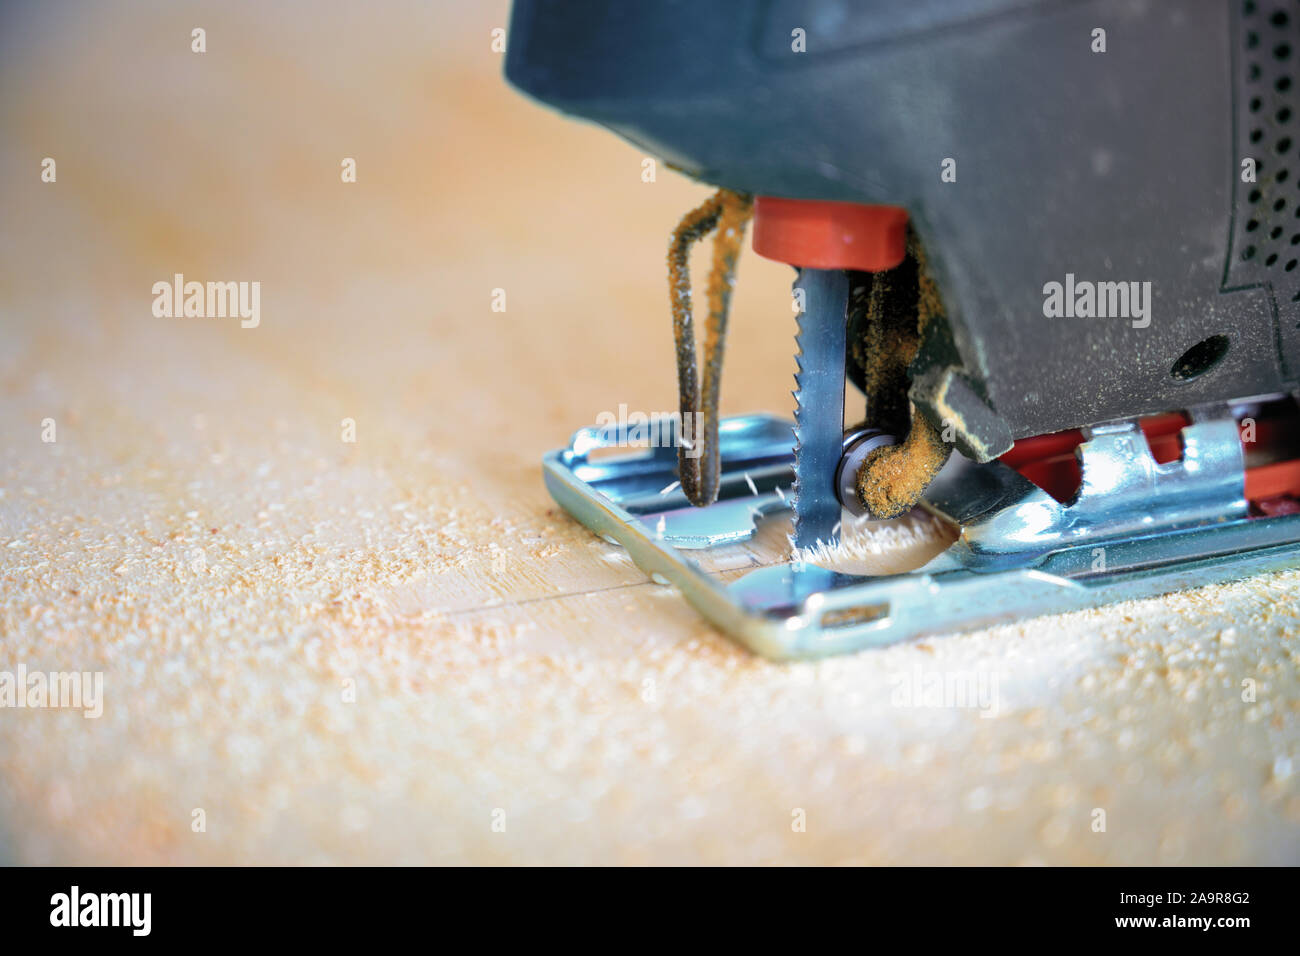 Close-up Detail eines elektrischen Stichsäge bis Sägen eine Sperrholzplatte, Werkzeug für den Profi oder Hobby Handwerk, Kopieren, ausgewählte konzentrieren, sehr schmalen de Stockfoto